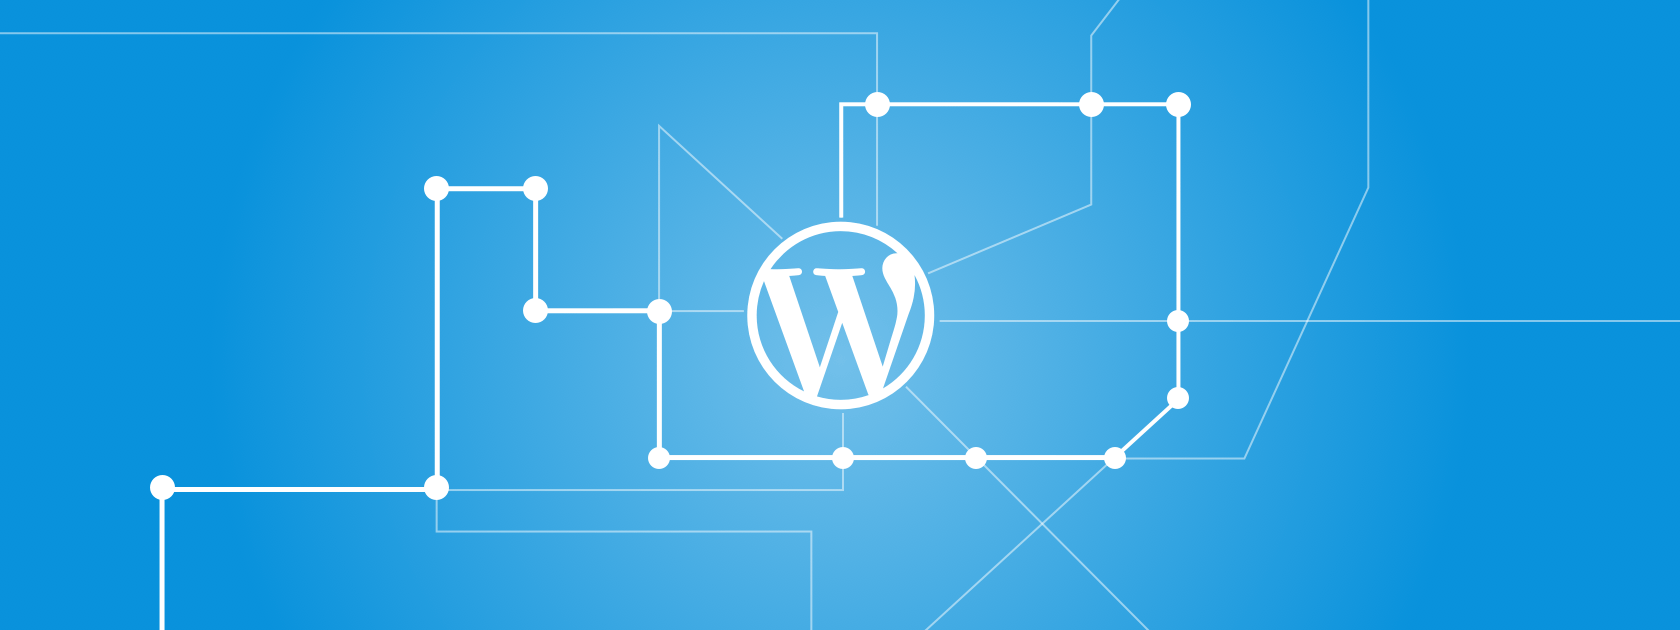 5 Benefits to Designing Your Website in WordPress